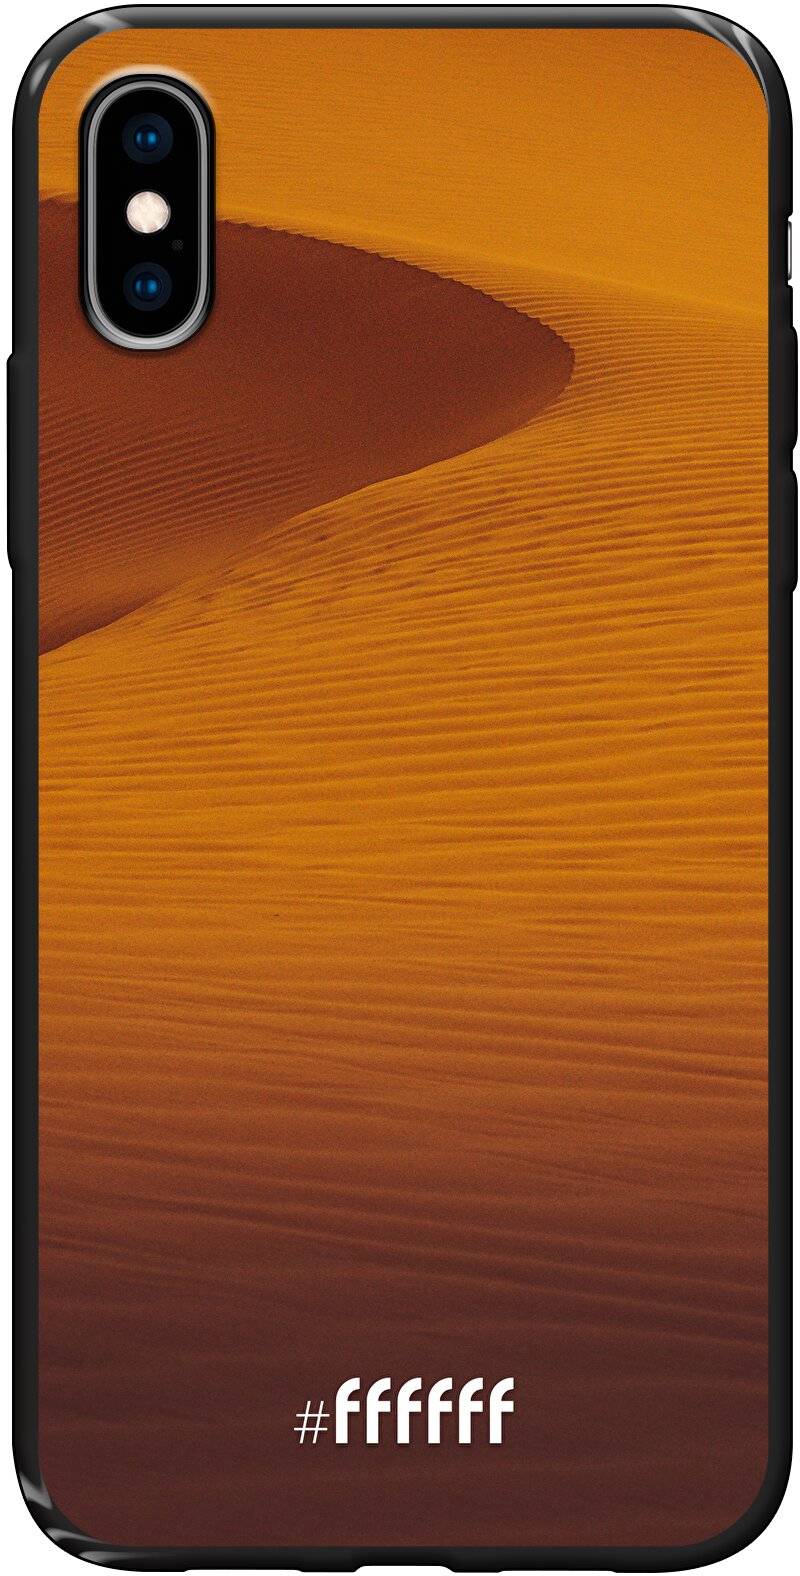 Sand Dunes iPhone Xs